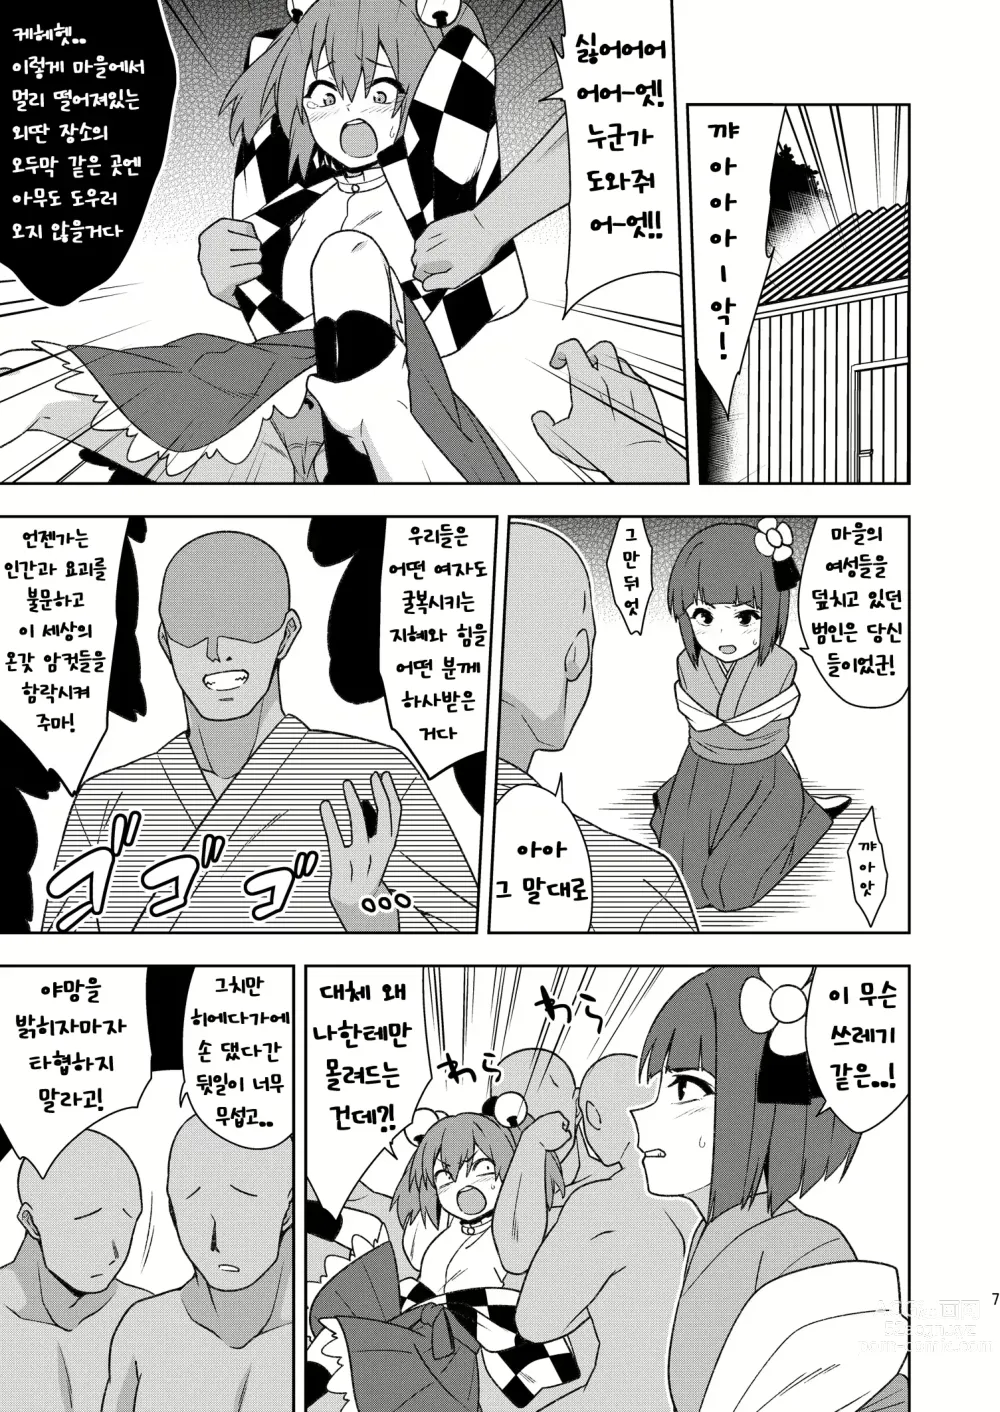 Page 6 of doujinshi Butou bouchuujutsu retsuden in Pi musou l 무투방중술열전 음란핑크무쌍